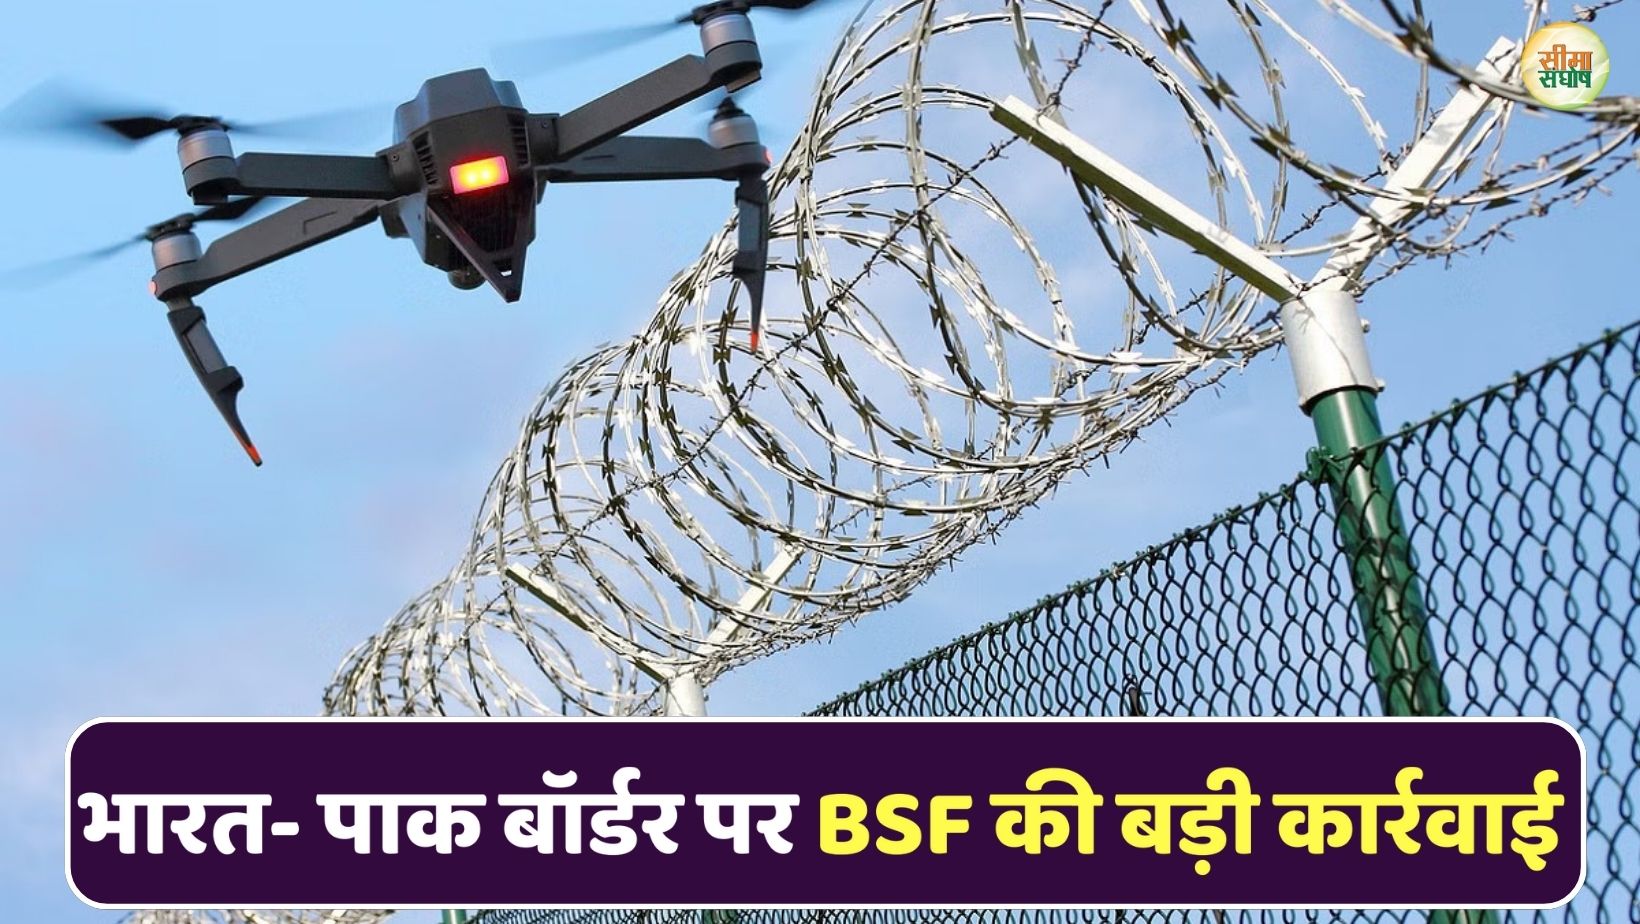 भारत- पाक इंटरनेशनल बॉर्डर पर BSF की बड़ी कार्रवाई, भारतीय सीमा में घुसे ड्रोन को फायरिंग कर गिराया